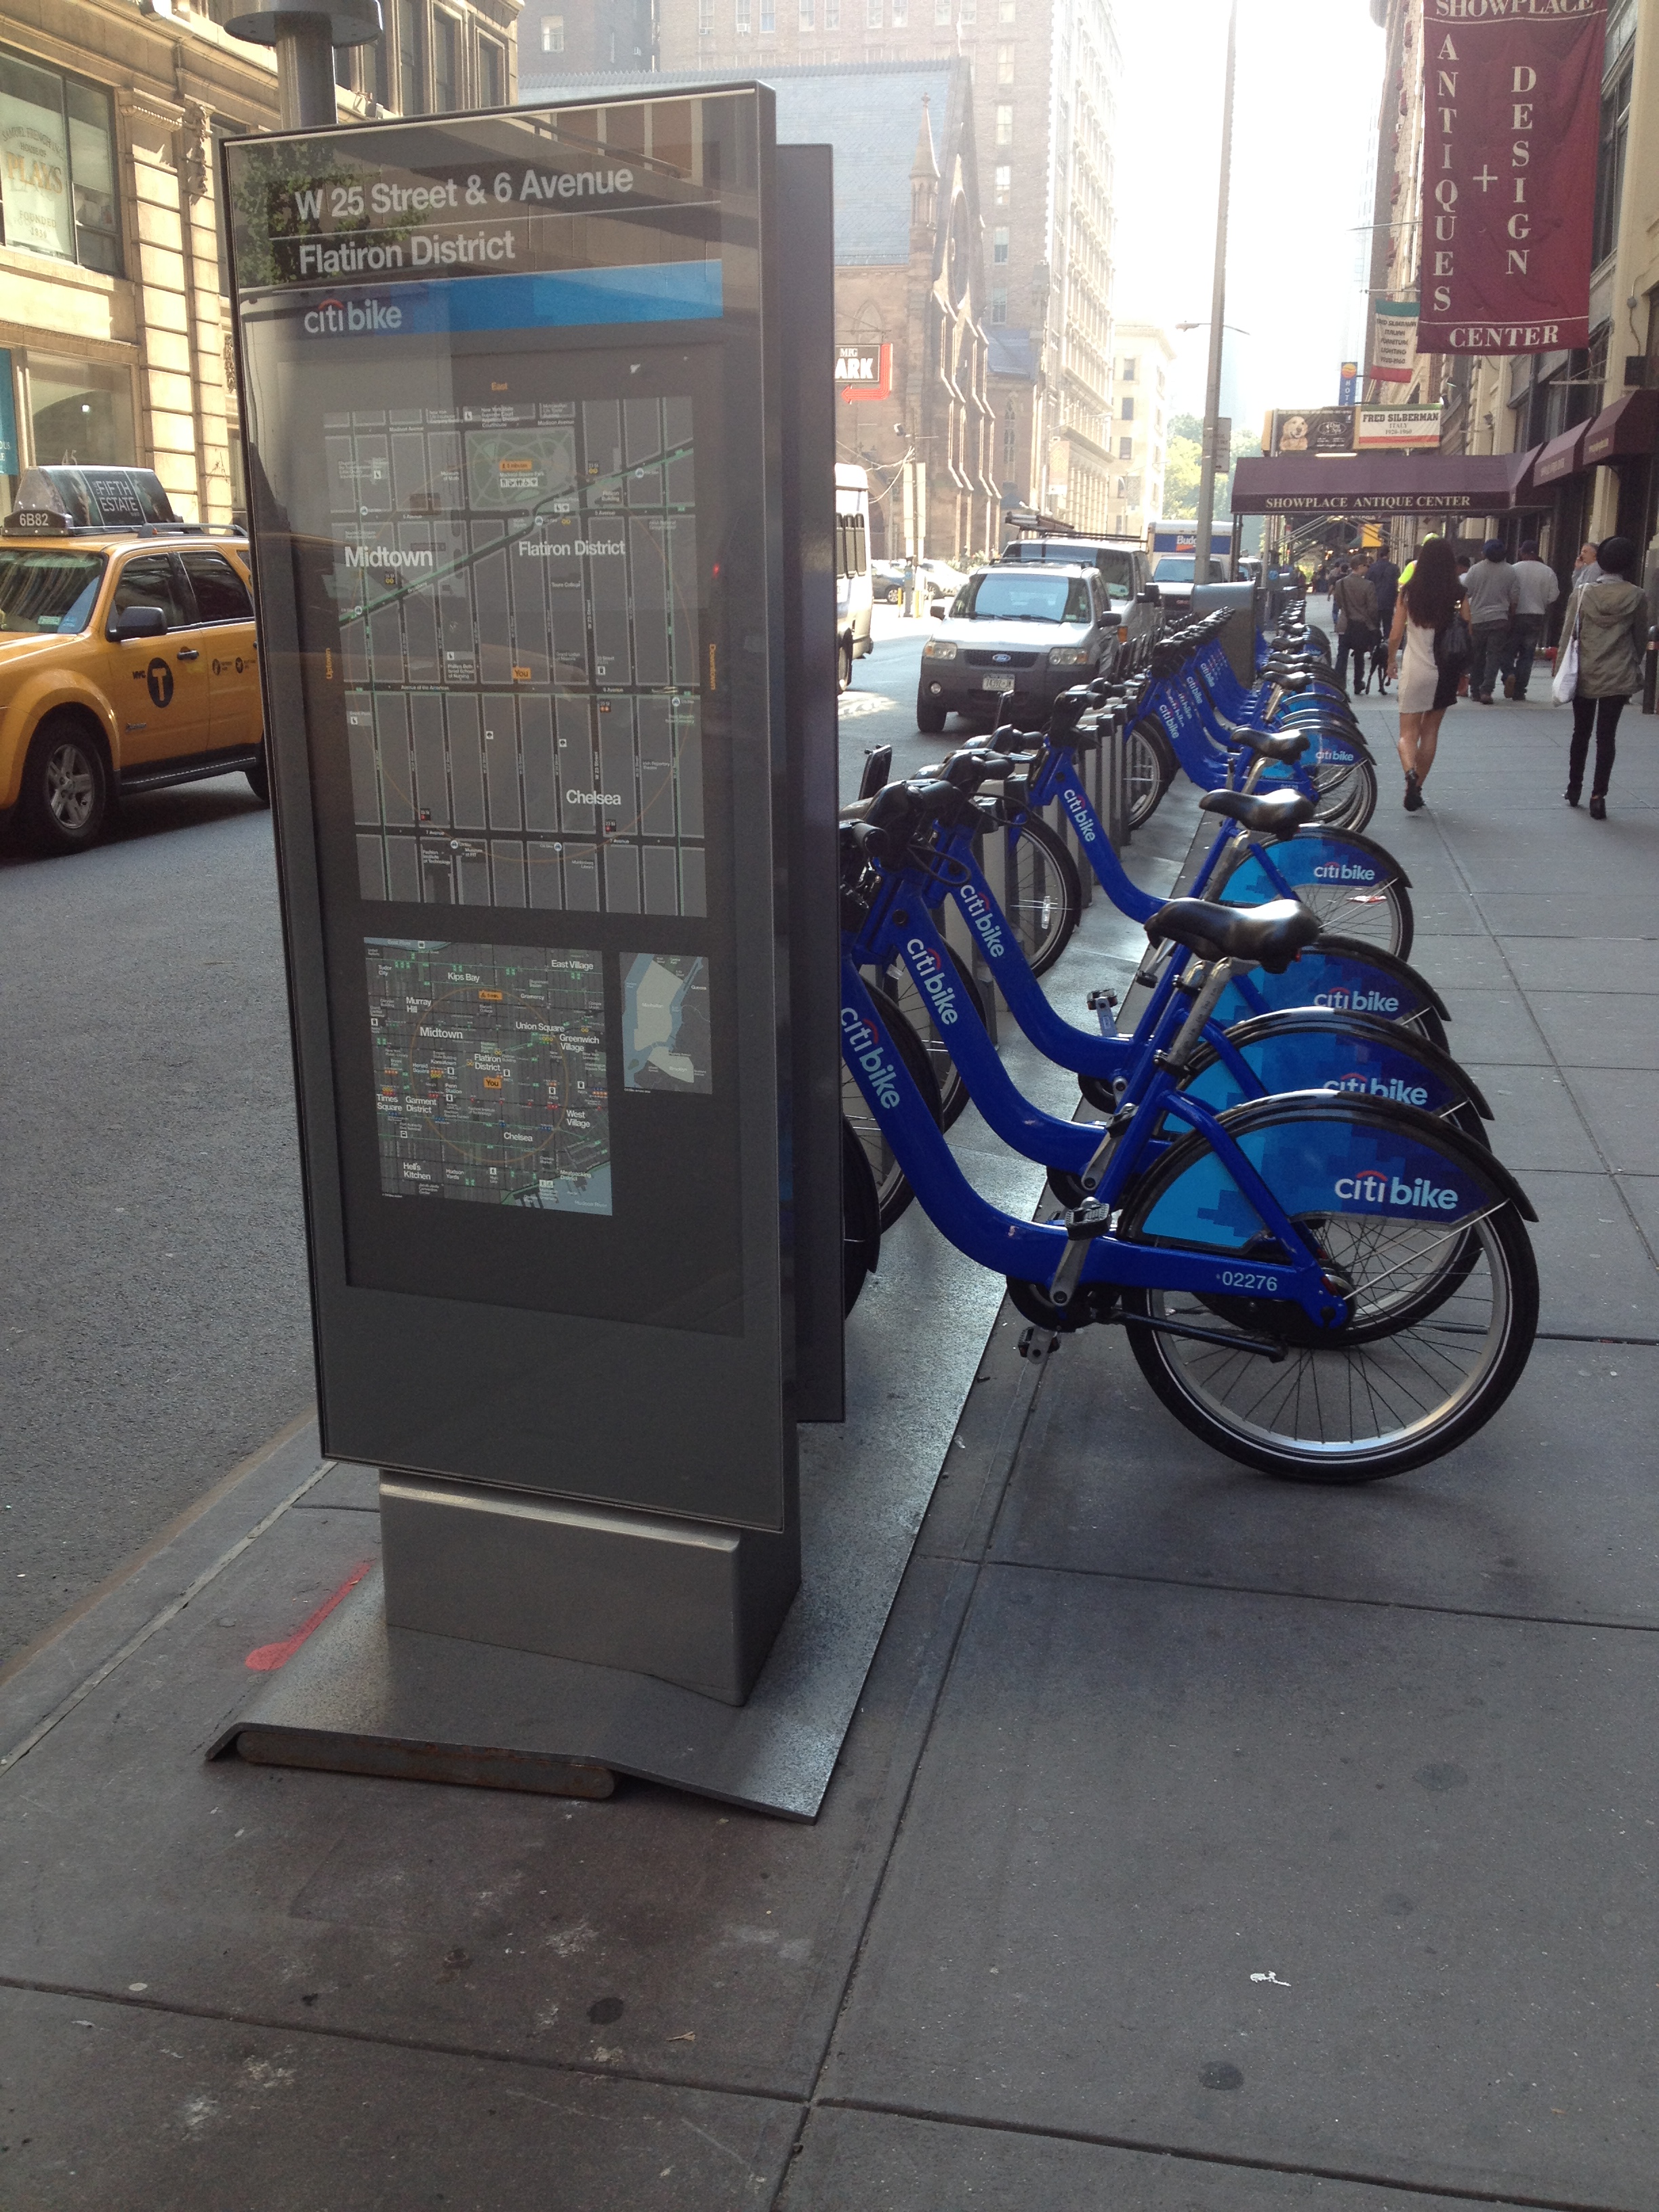 Citi Bike is New York City's bike sharing system